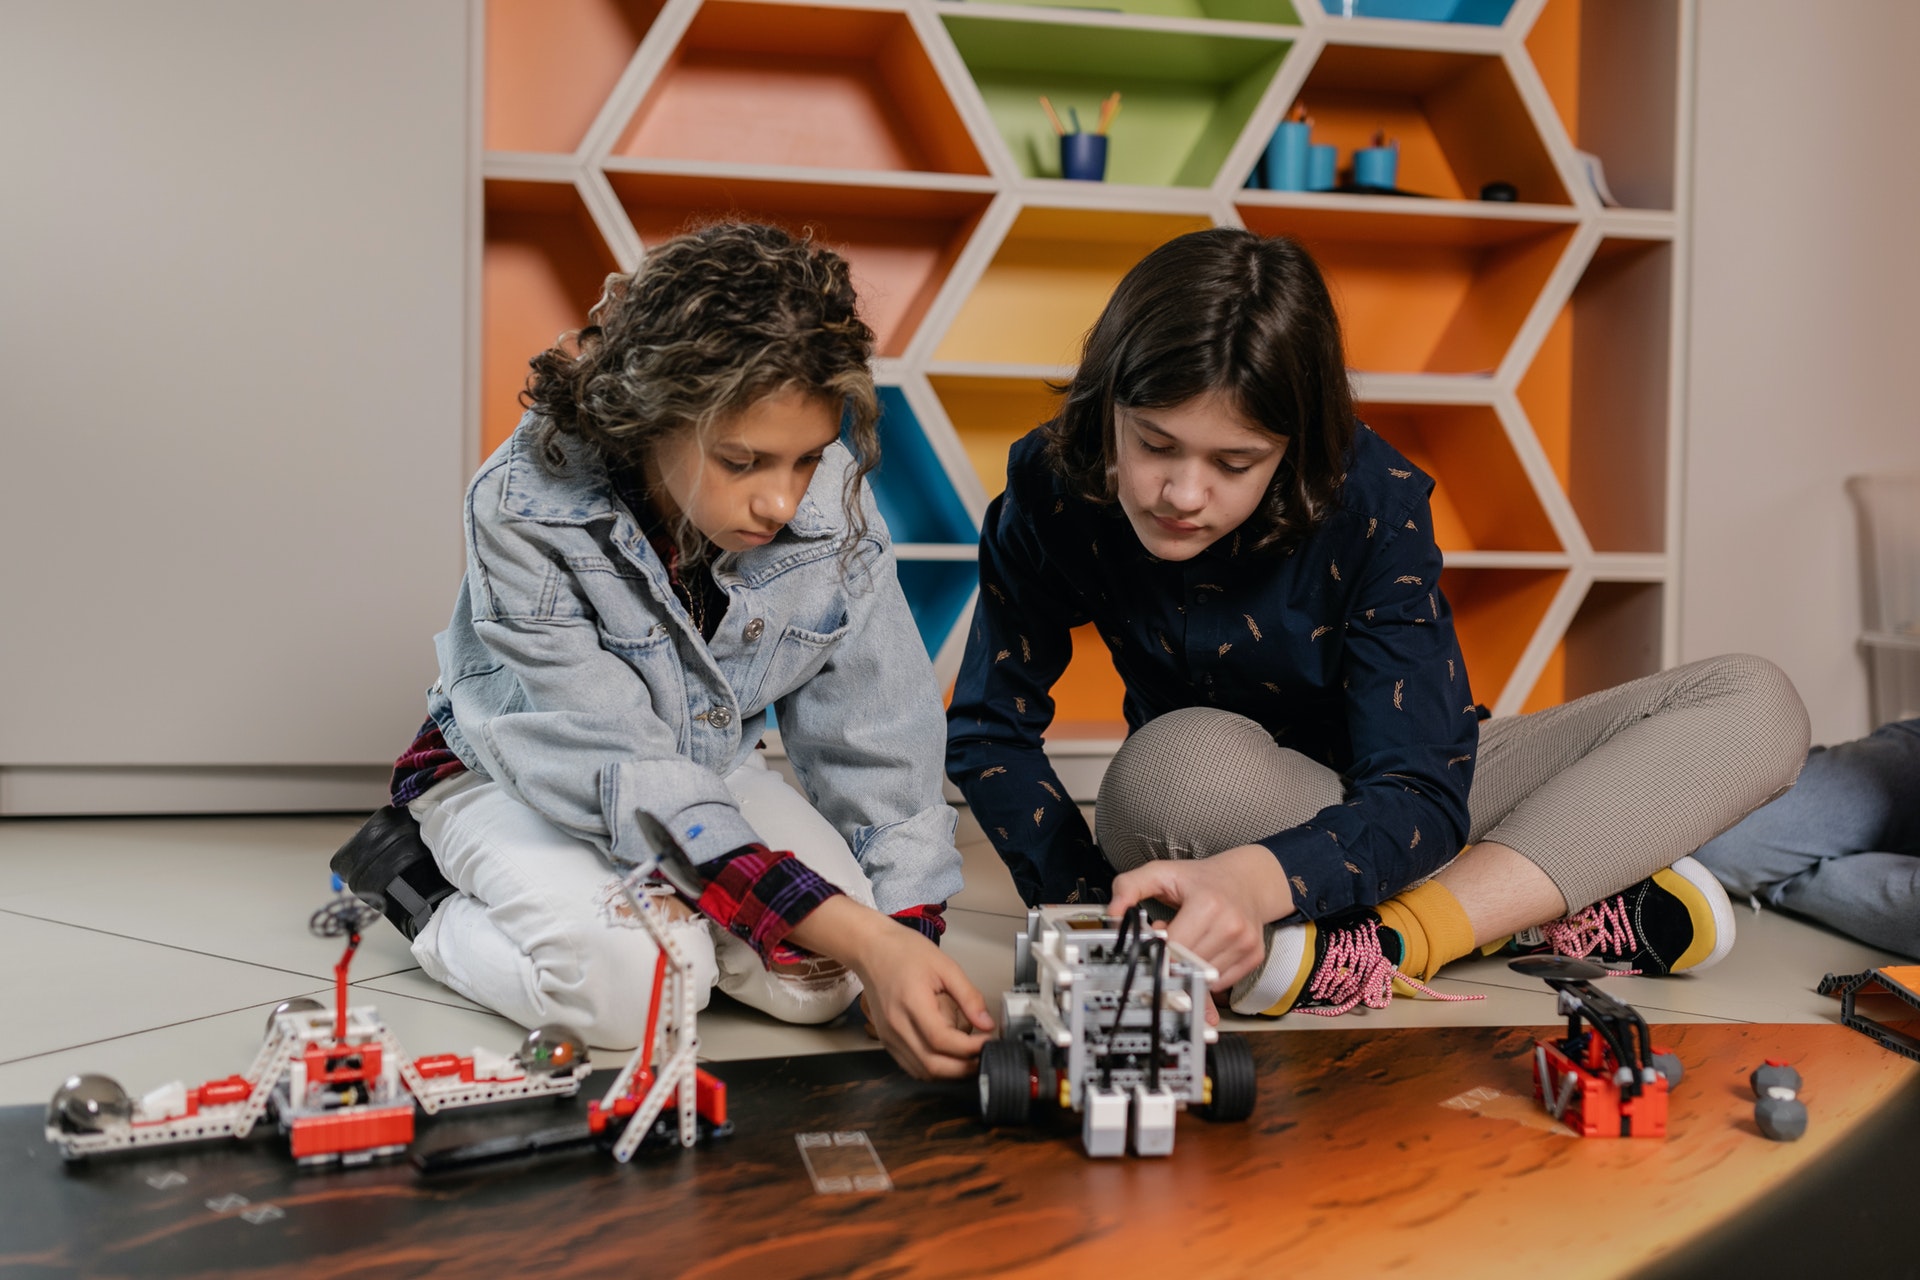 Adolescentes montando um robô em uma sala de aula. Imagem ilustrativa do texto curso de robótica e programação infantil.